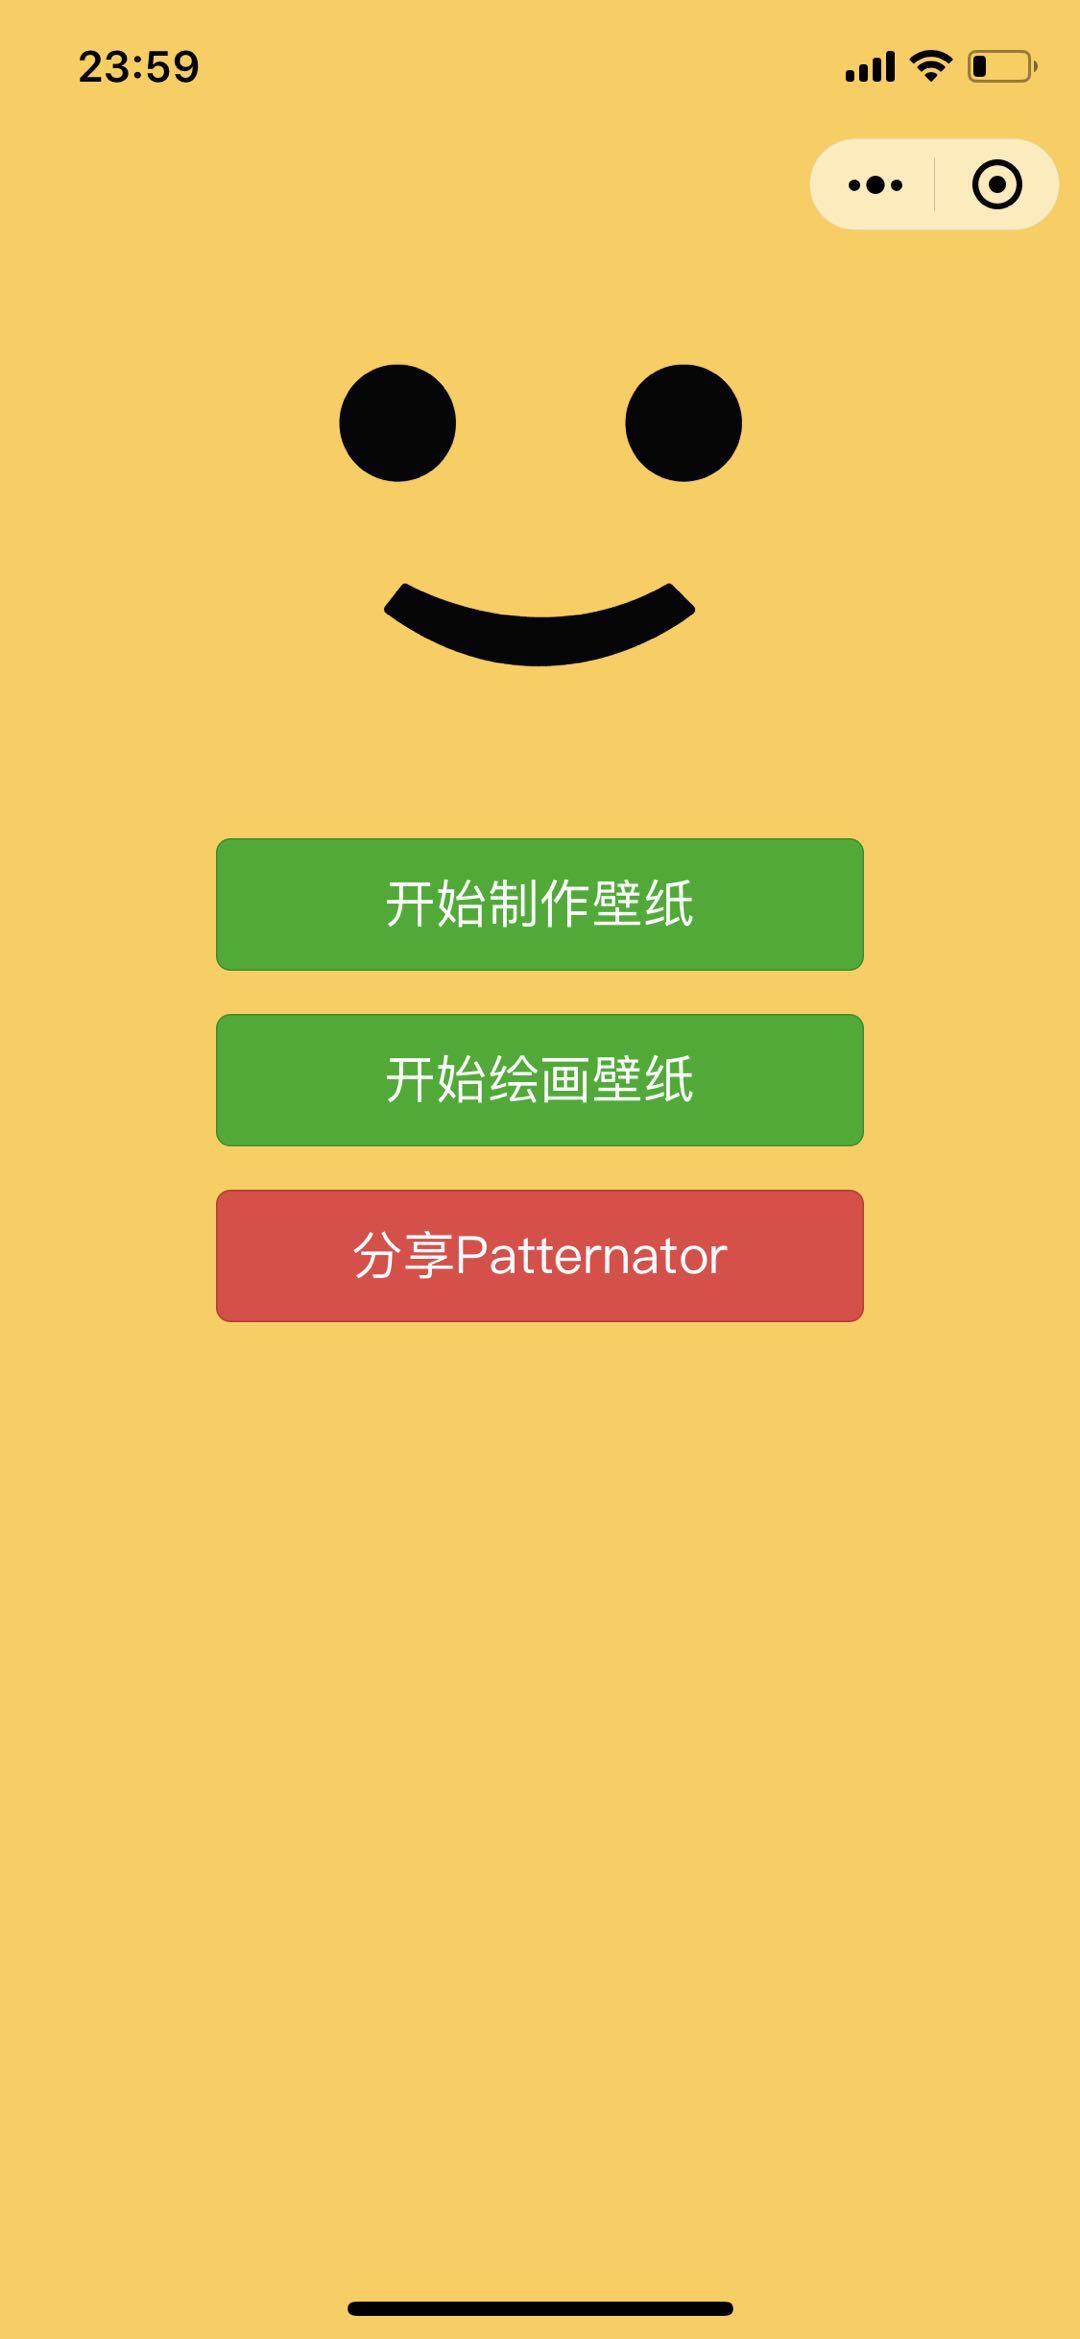 Patternator_Patternator小程序_Patternator微信小程序